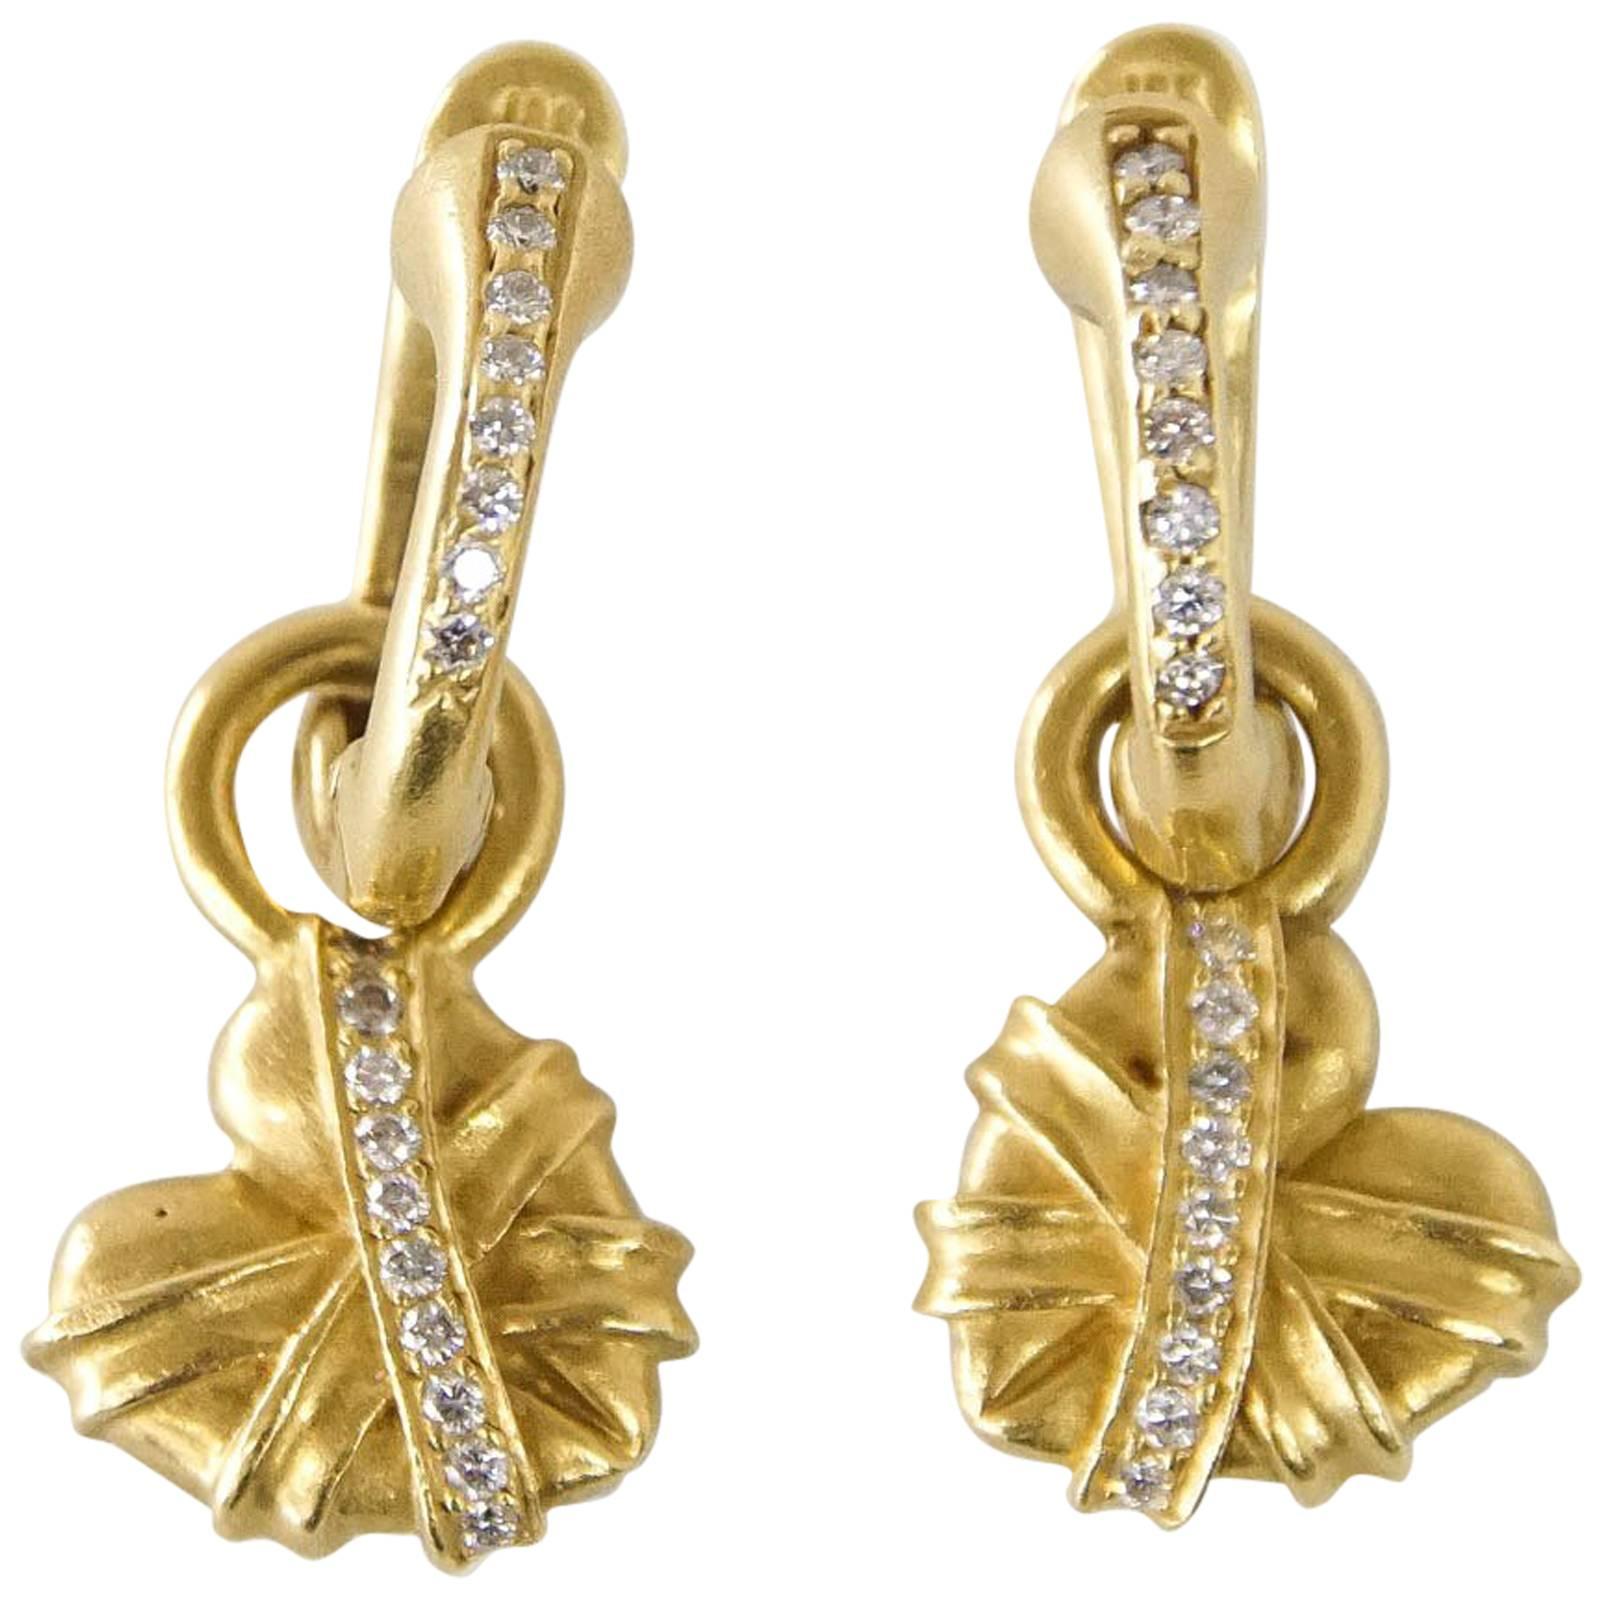 BARRY KIESELSTEIN-CORD Earrings Heart Huggie Wear 2 Ways 18K Green Gold Diamonds